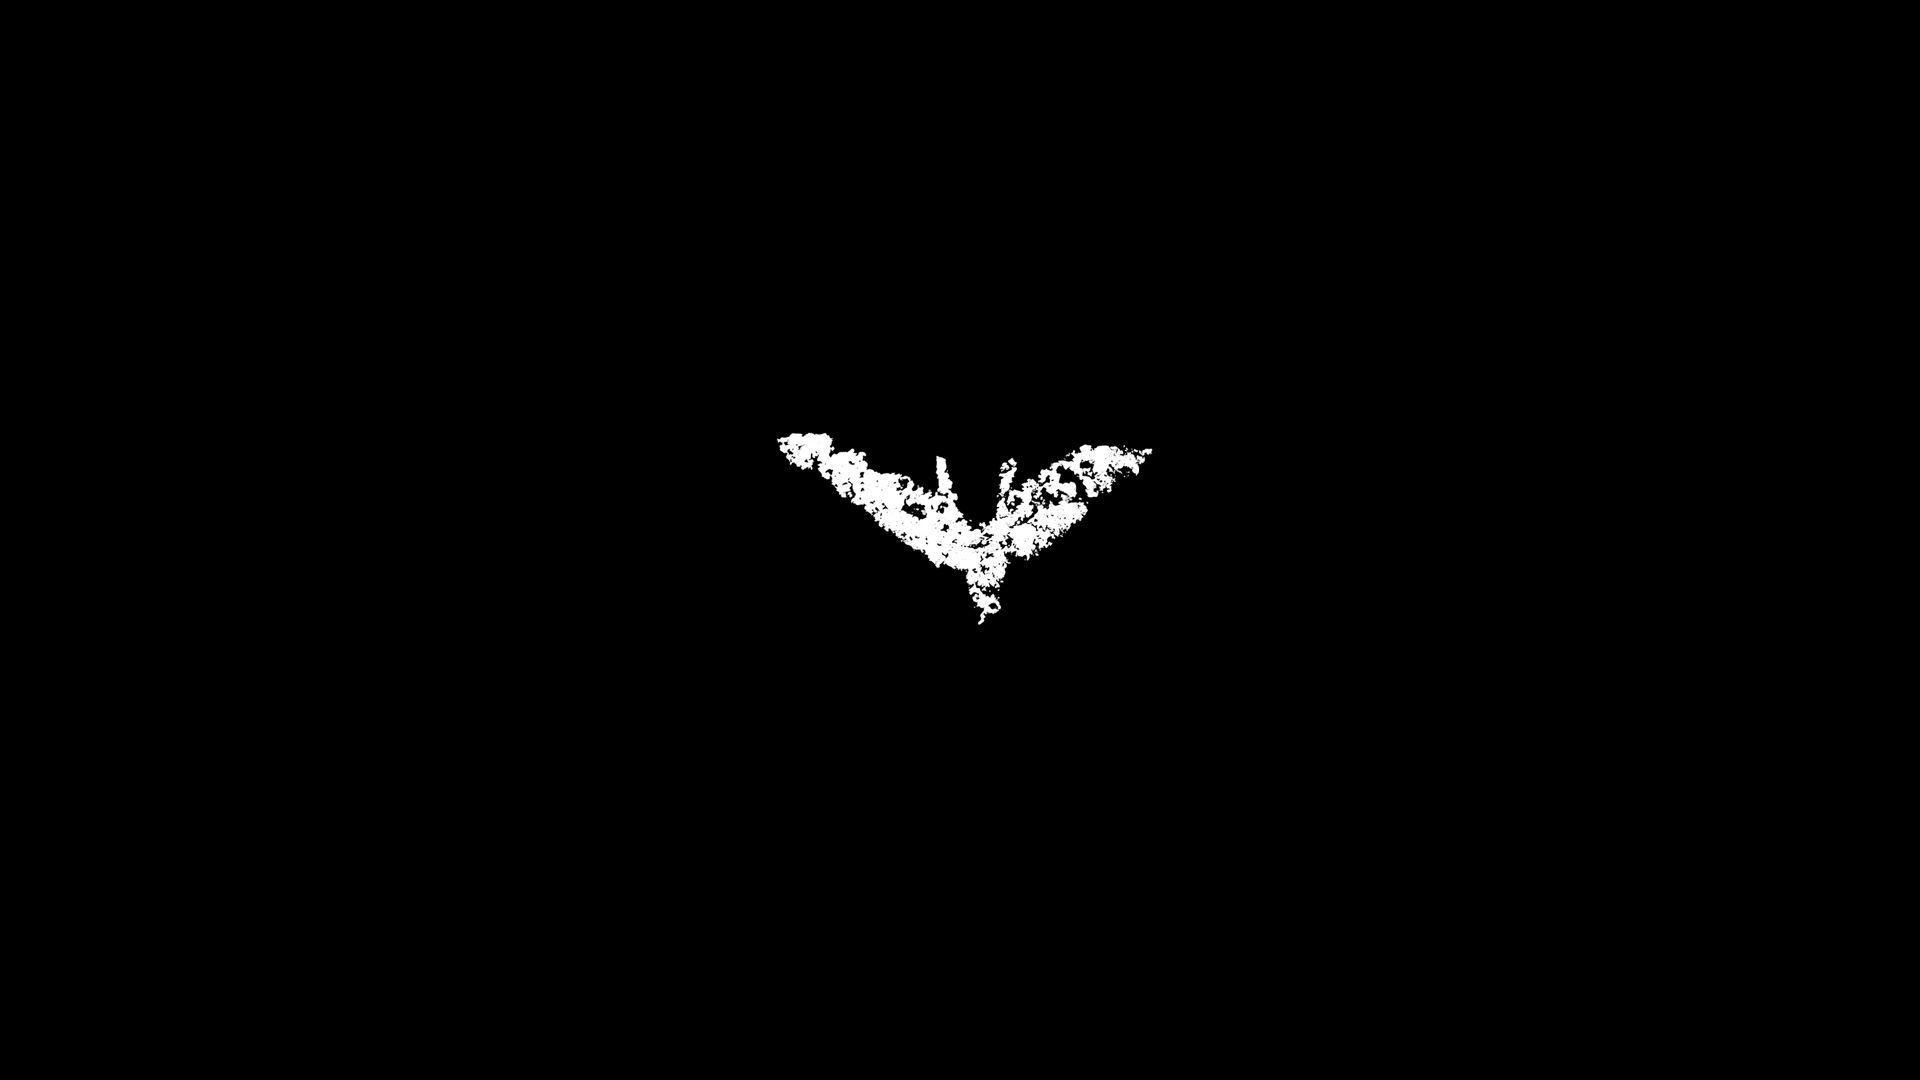 Wallpaper For > The Dark Knight Logo Wallpaper